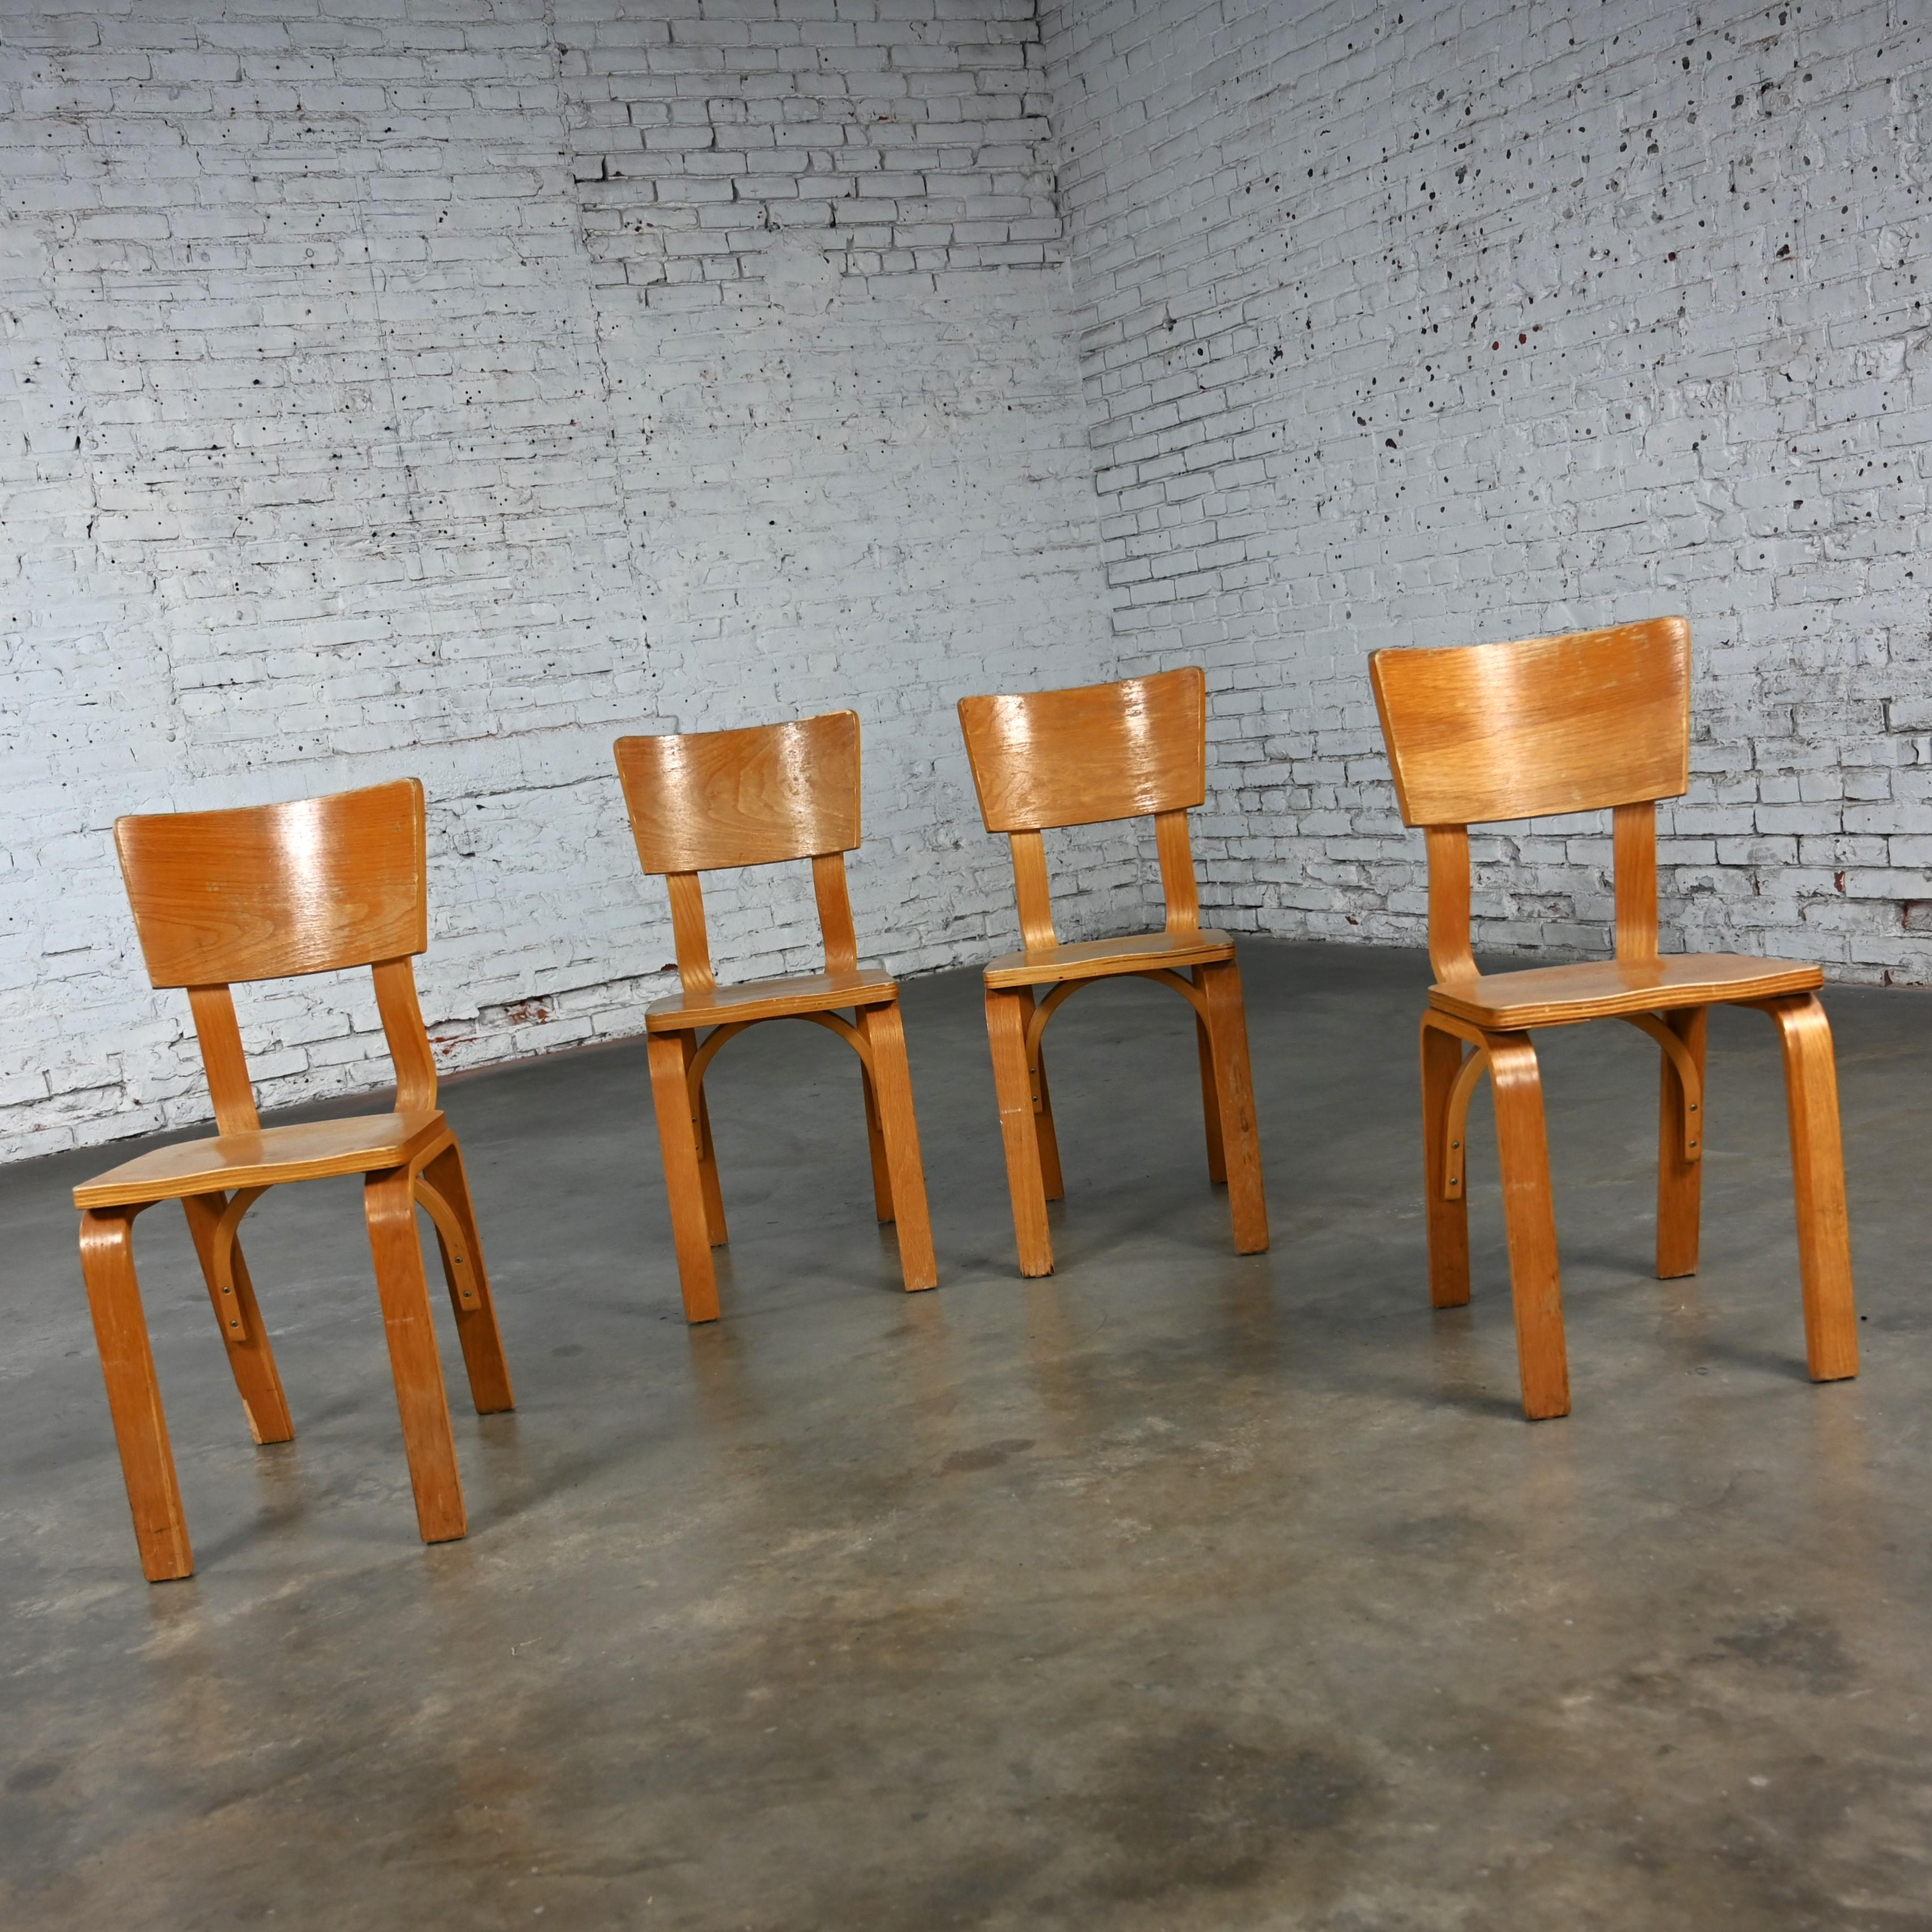 Chêne Ensemble de 4 chaises de salle à manger MCM Thonet #1216 en contreplaqué de chêne courbé, assise en selle, arc simple en vente